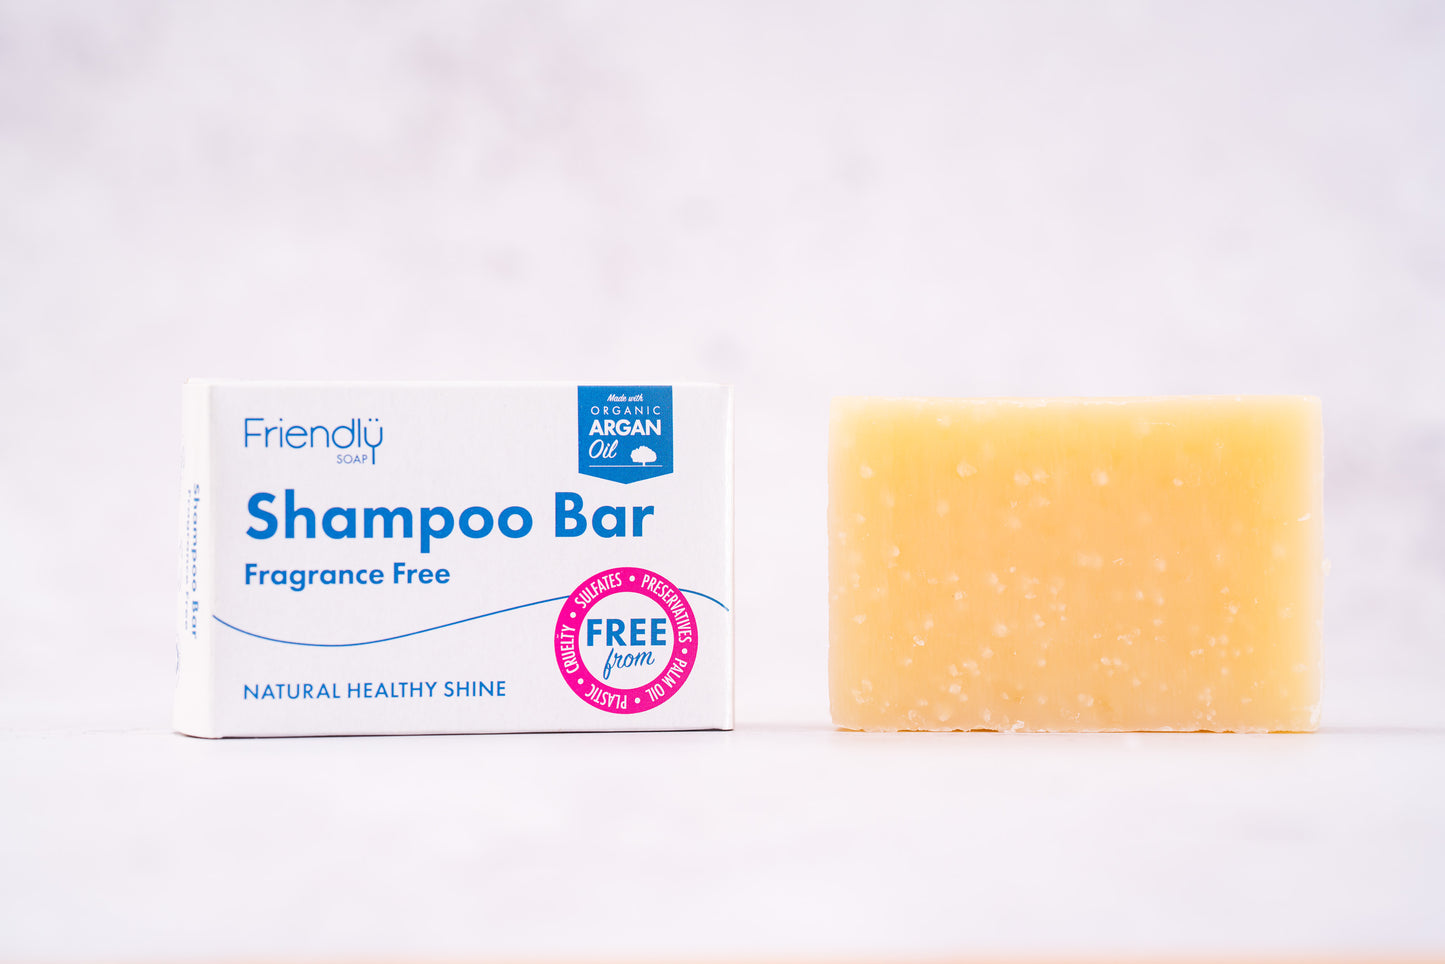 Friendly Shampoo Bar - Fragrance Free